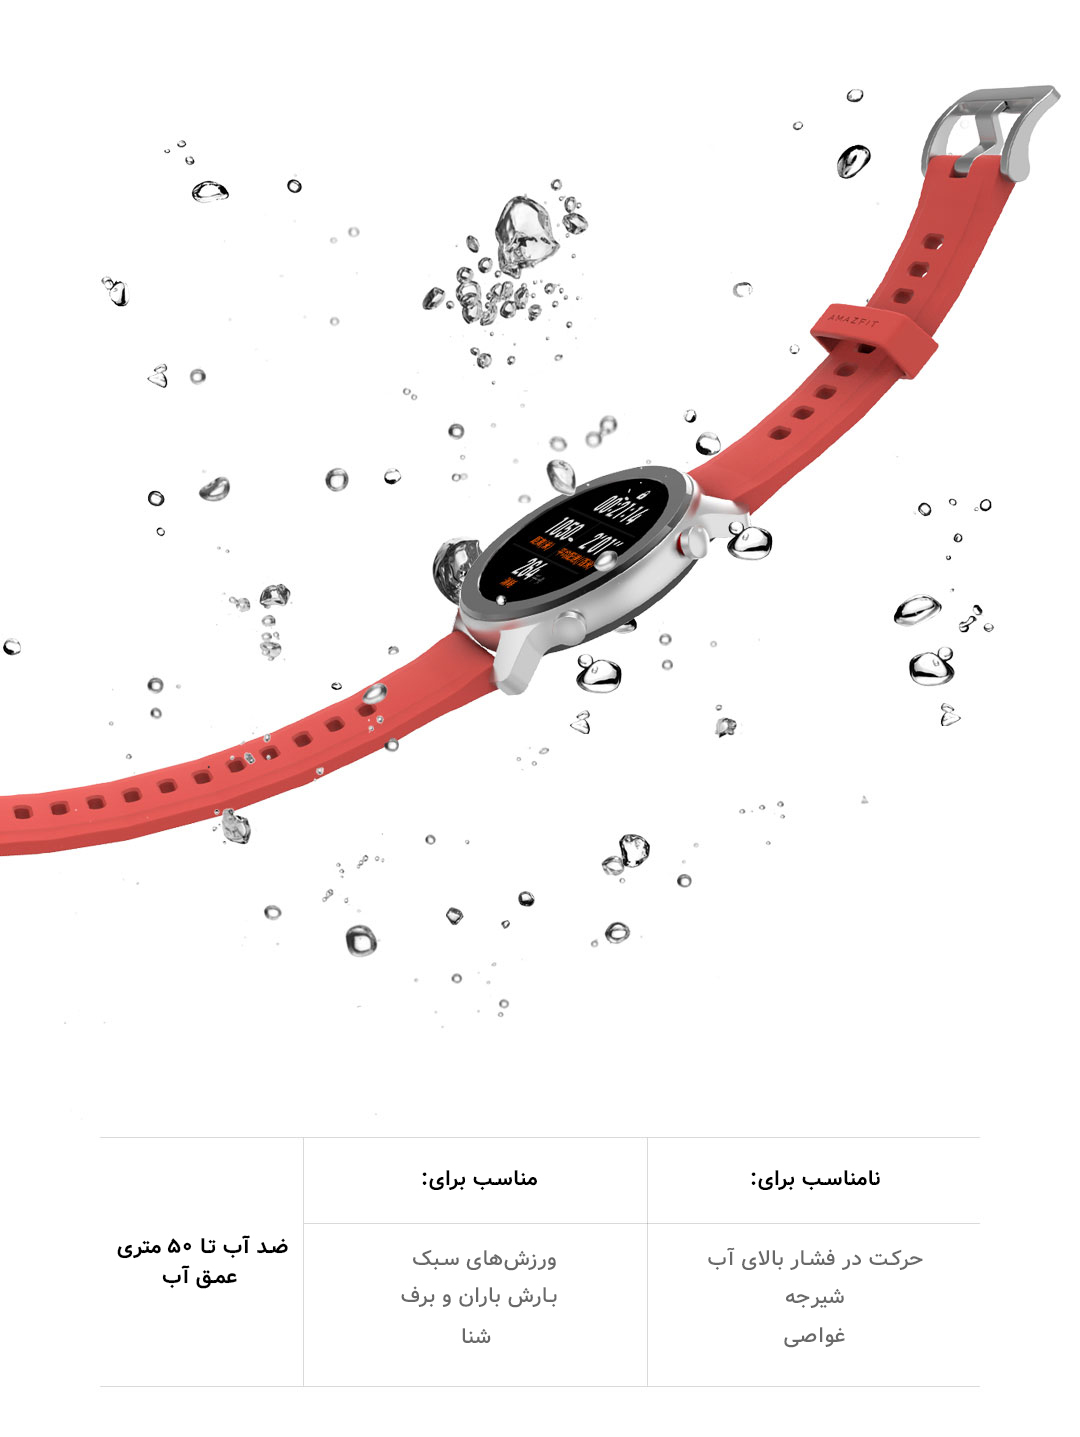 ساعت هوشمند Amazfit نسخه 42 میلی متر مدل GTR